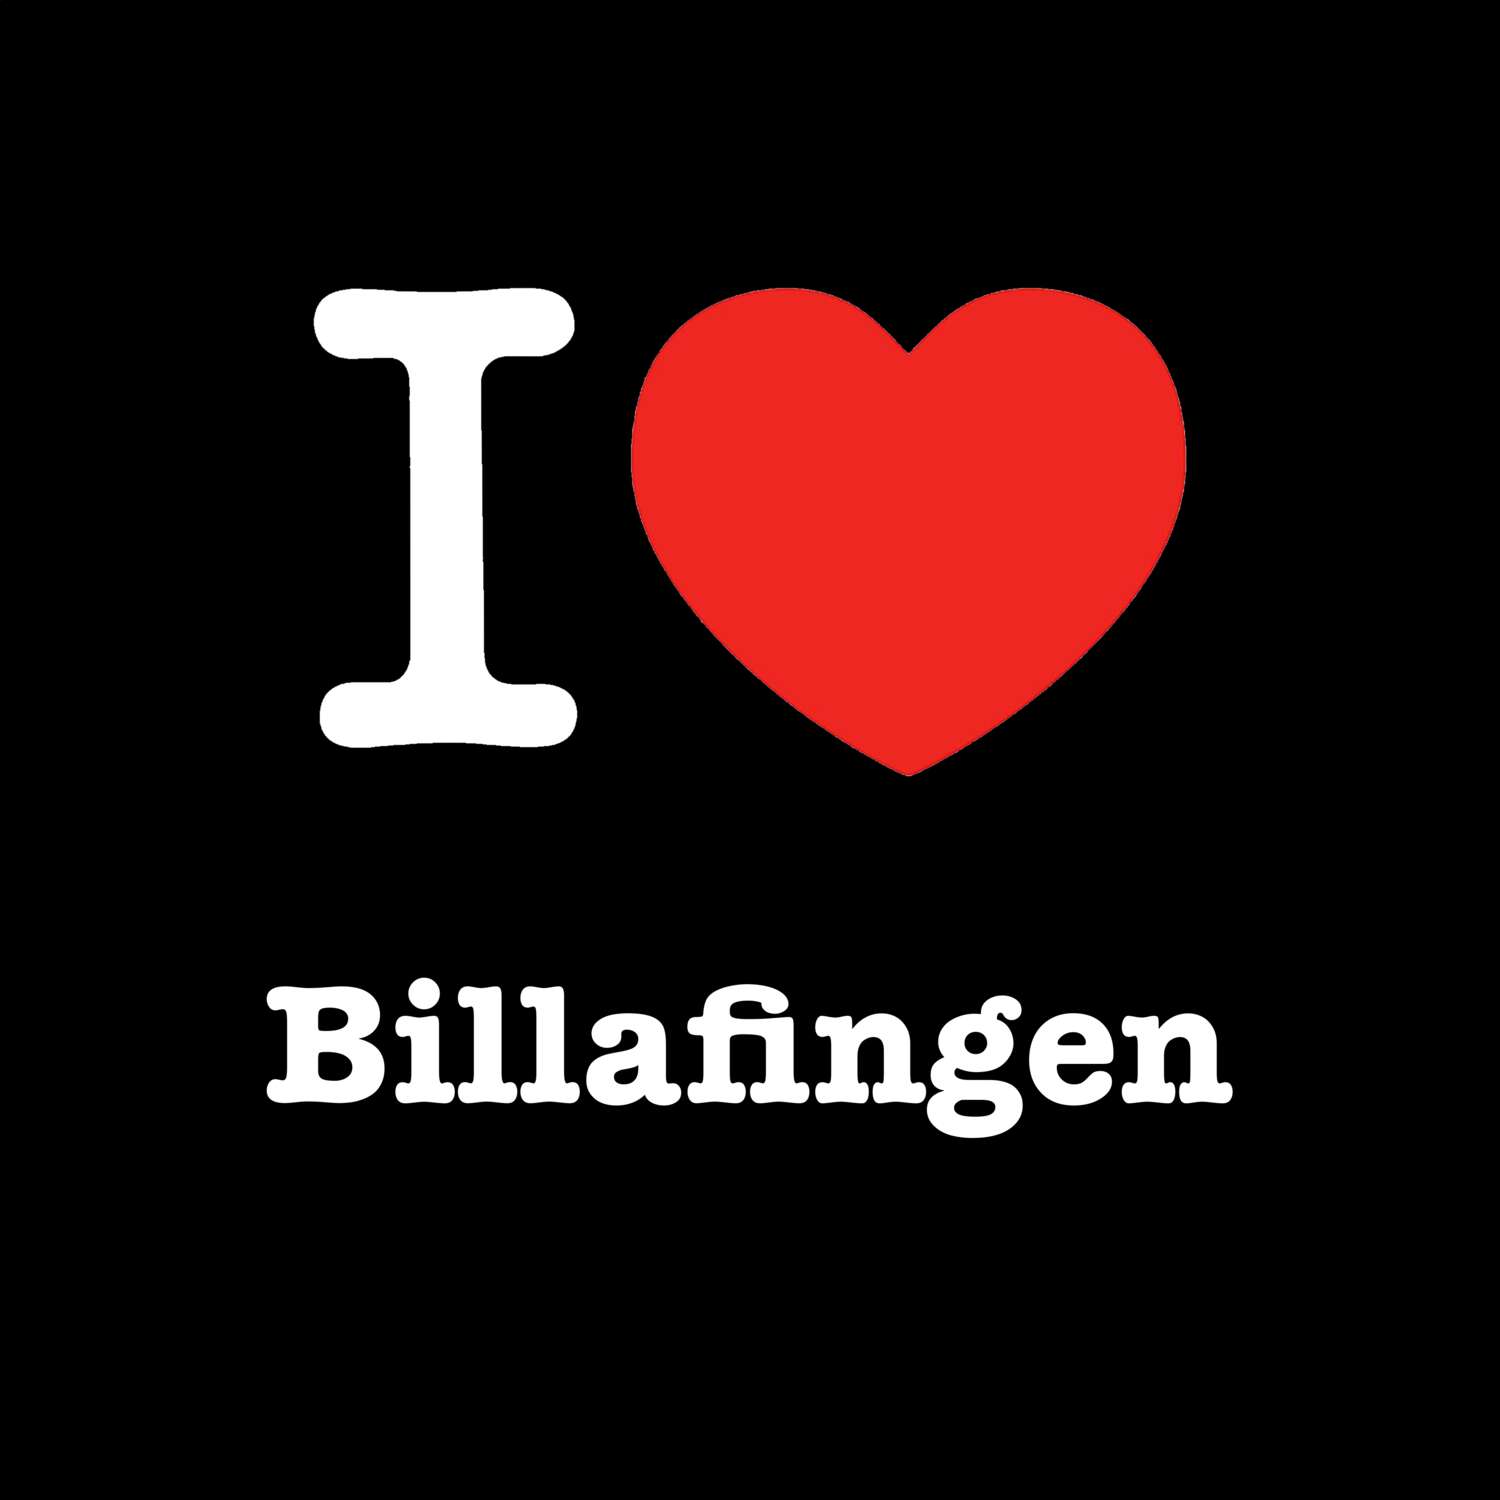 Billafingen T-Shirt »I love«